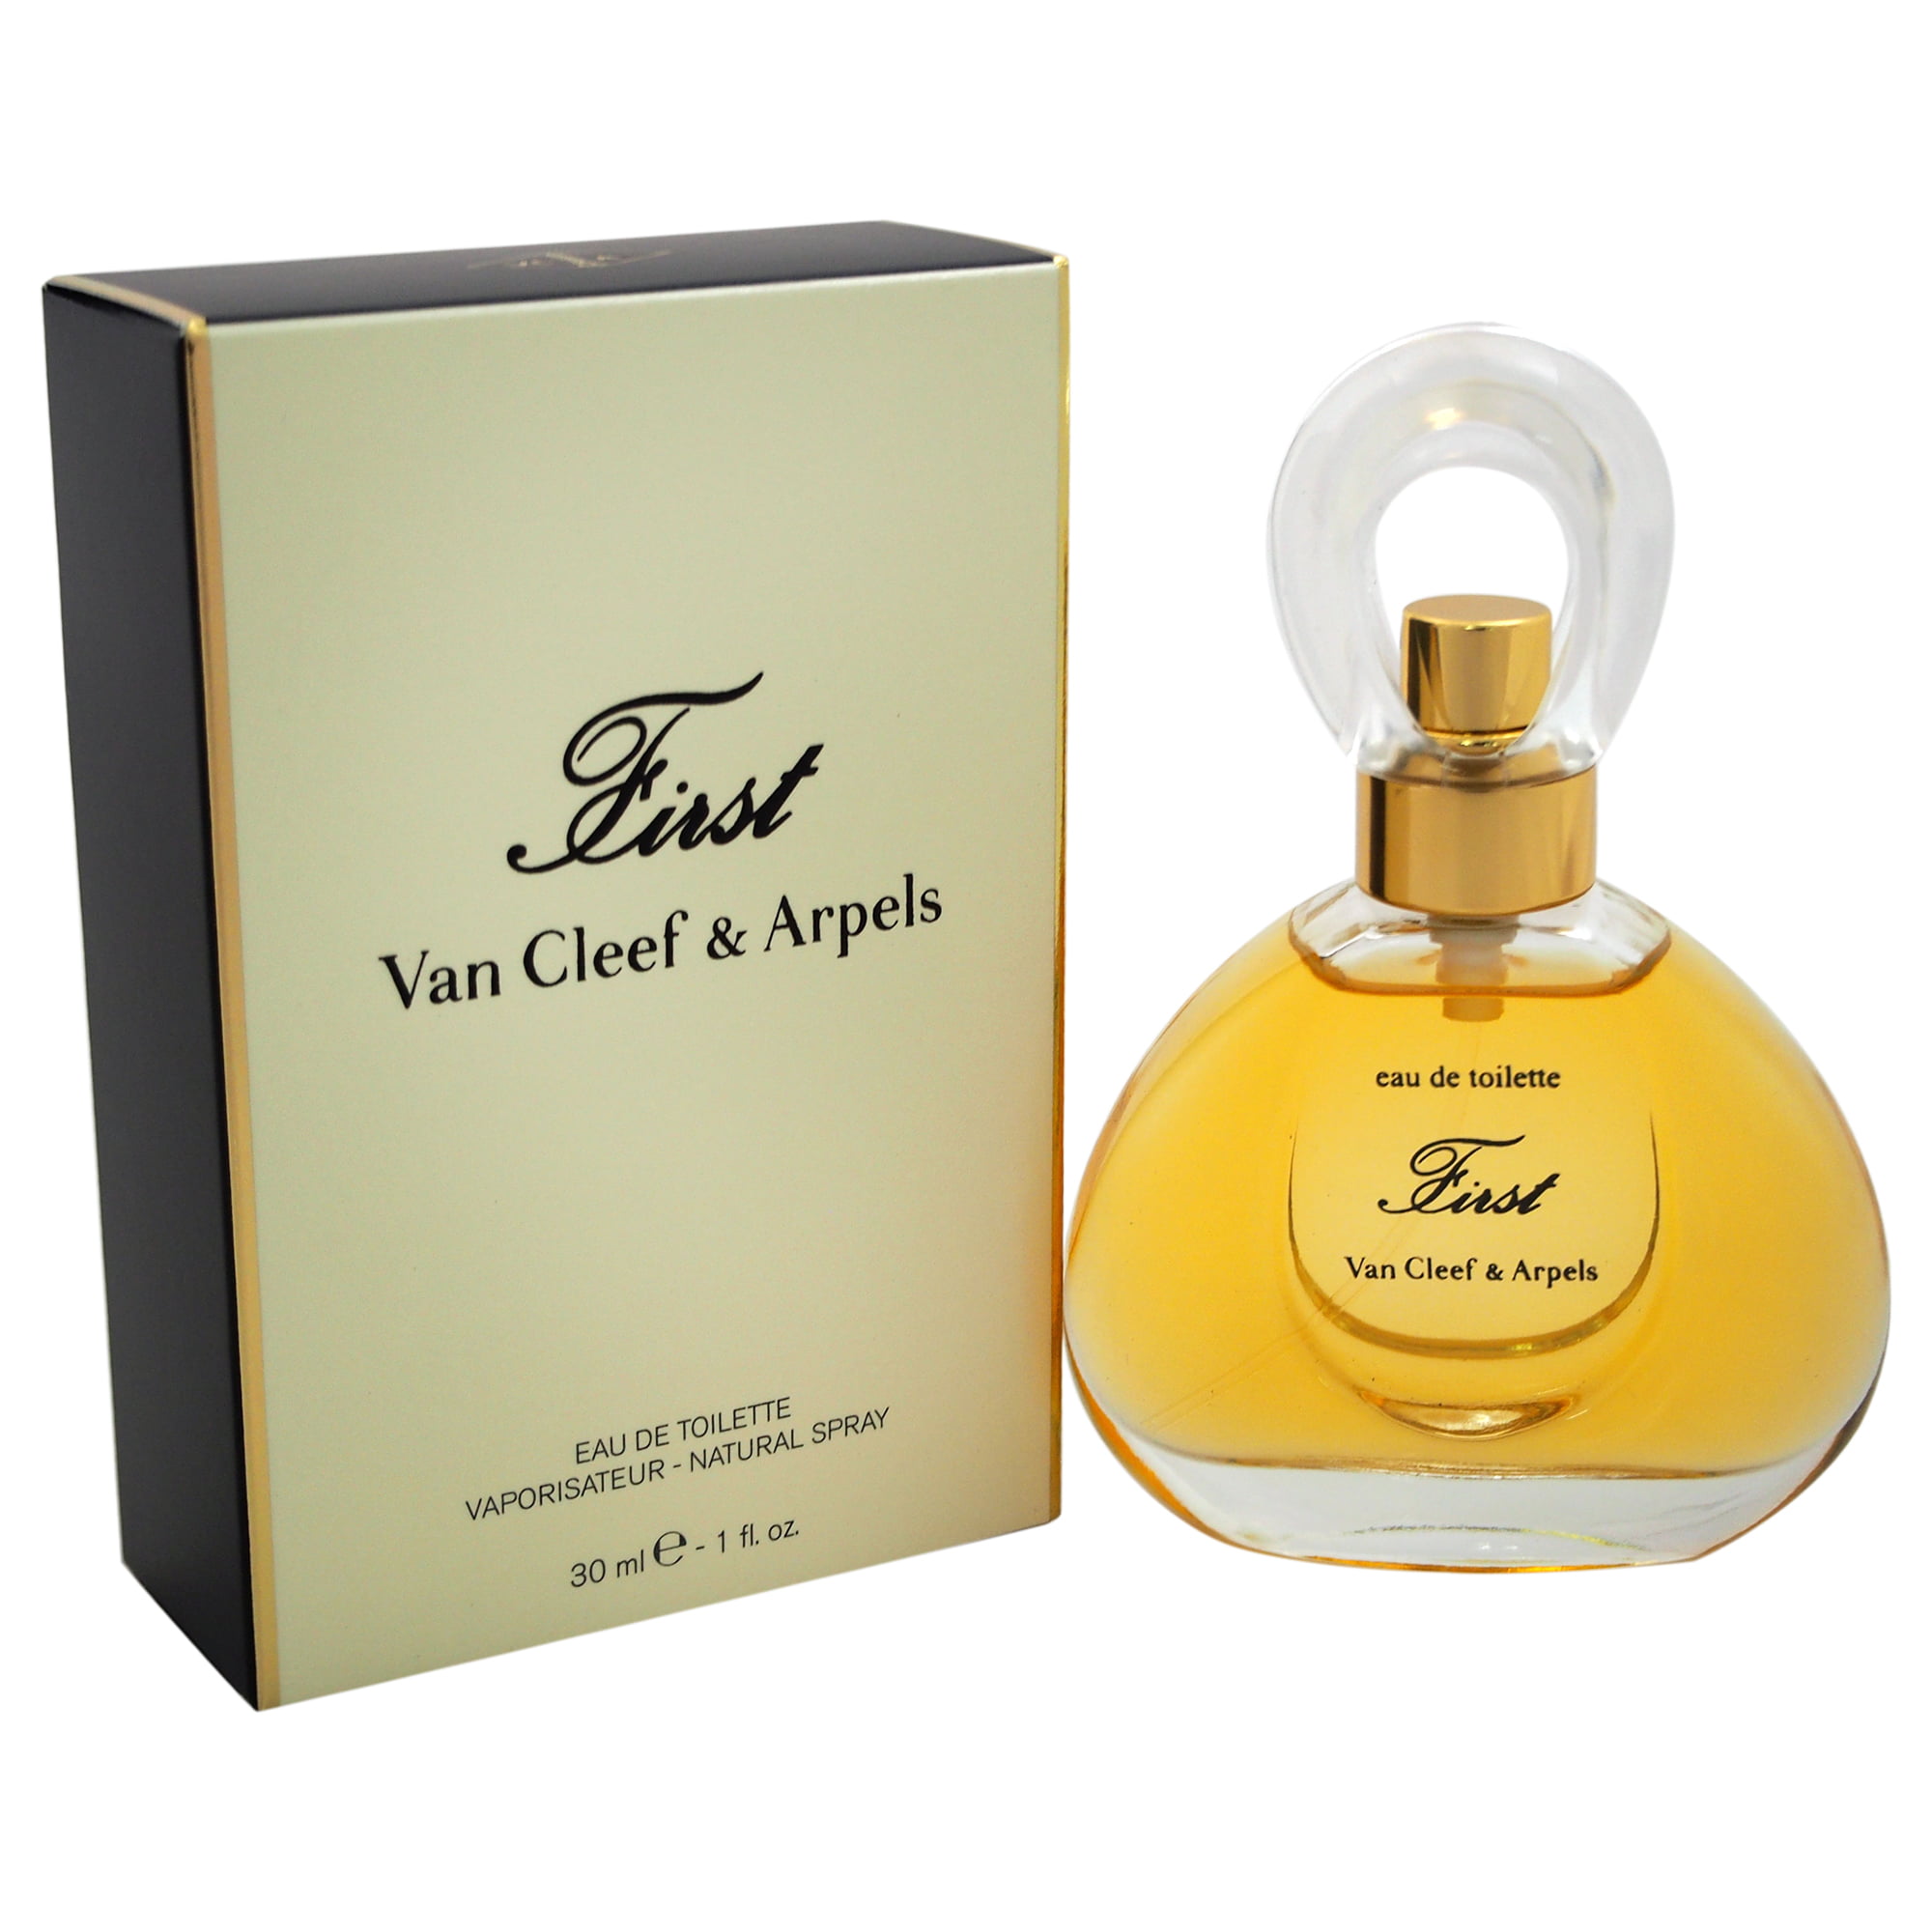 First perfume by van cleef arpels